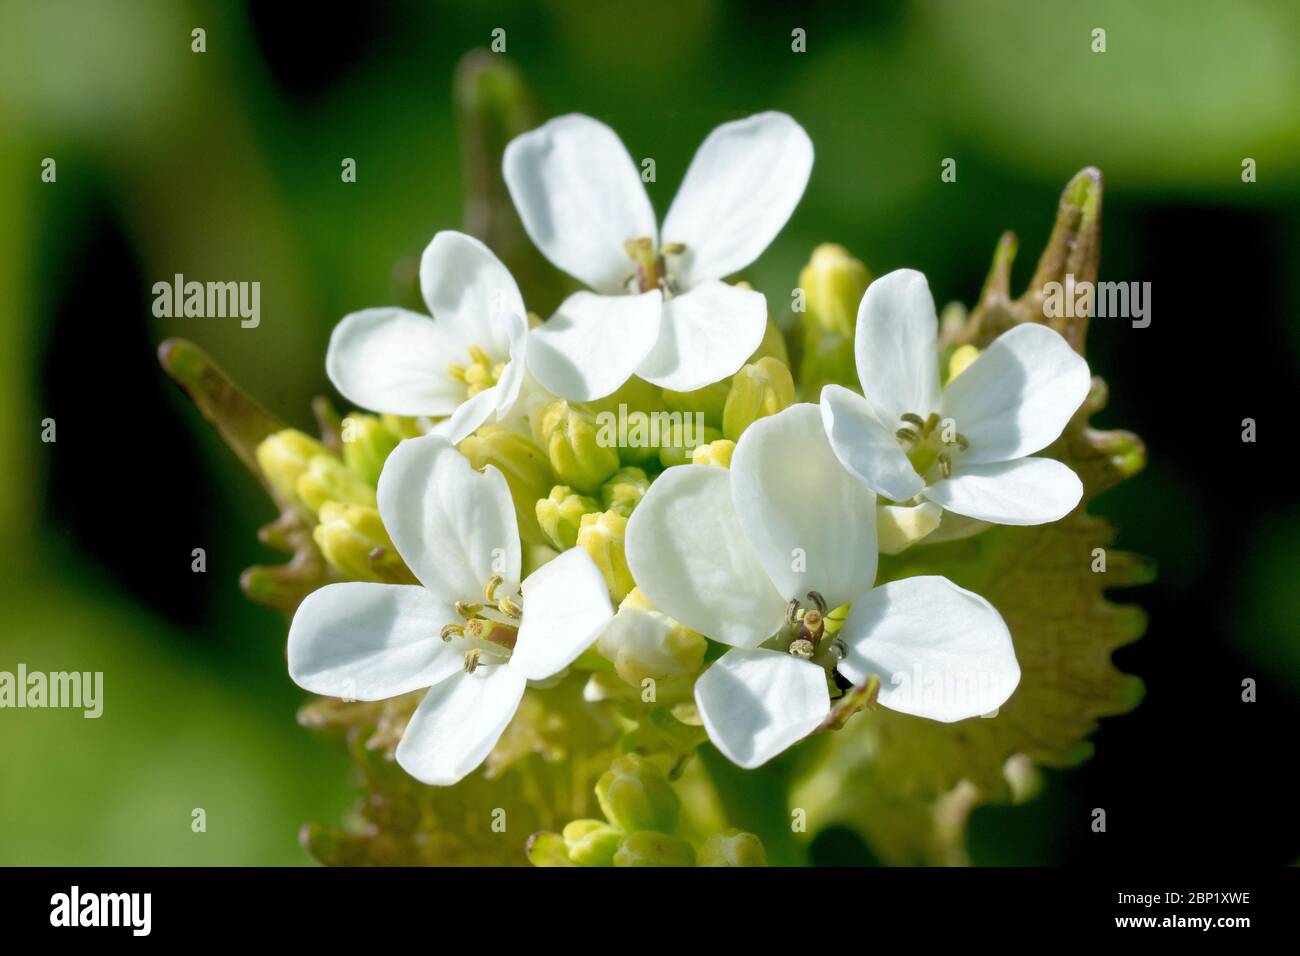 Aglio senape (alliaria petiolata), conosciuto anche come Jack by the Hedge, primo piano mostrando la testa del fiore mentre i fiori iniziano a comparire. Foto Stock